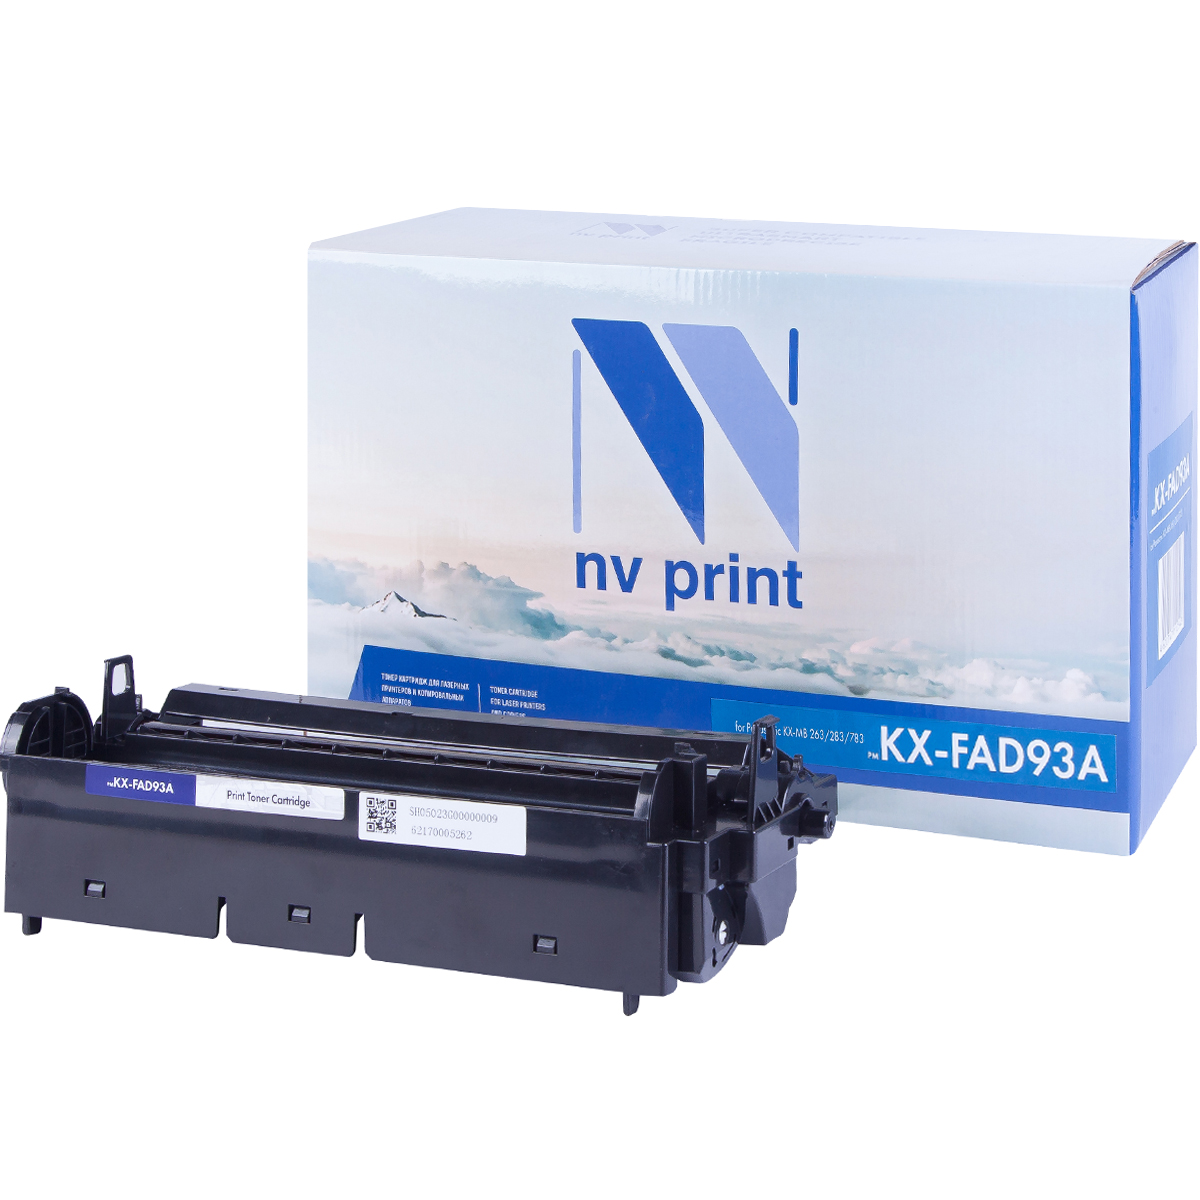   NV-Print  Panasonic KX-MB263RU/MB283RU/MB763RU, KX-FAD93A   